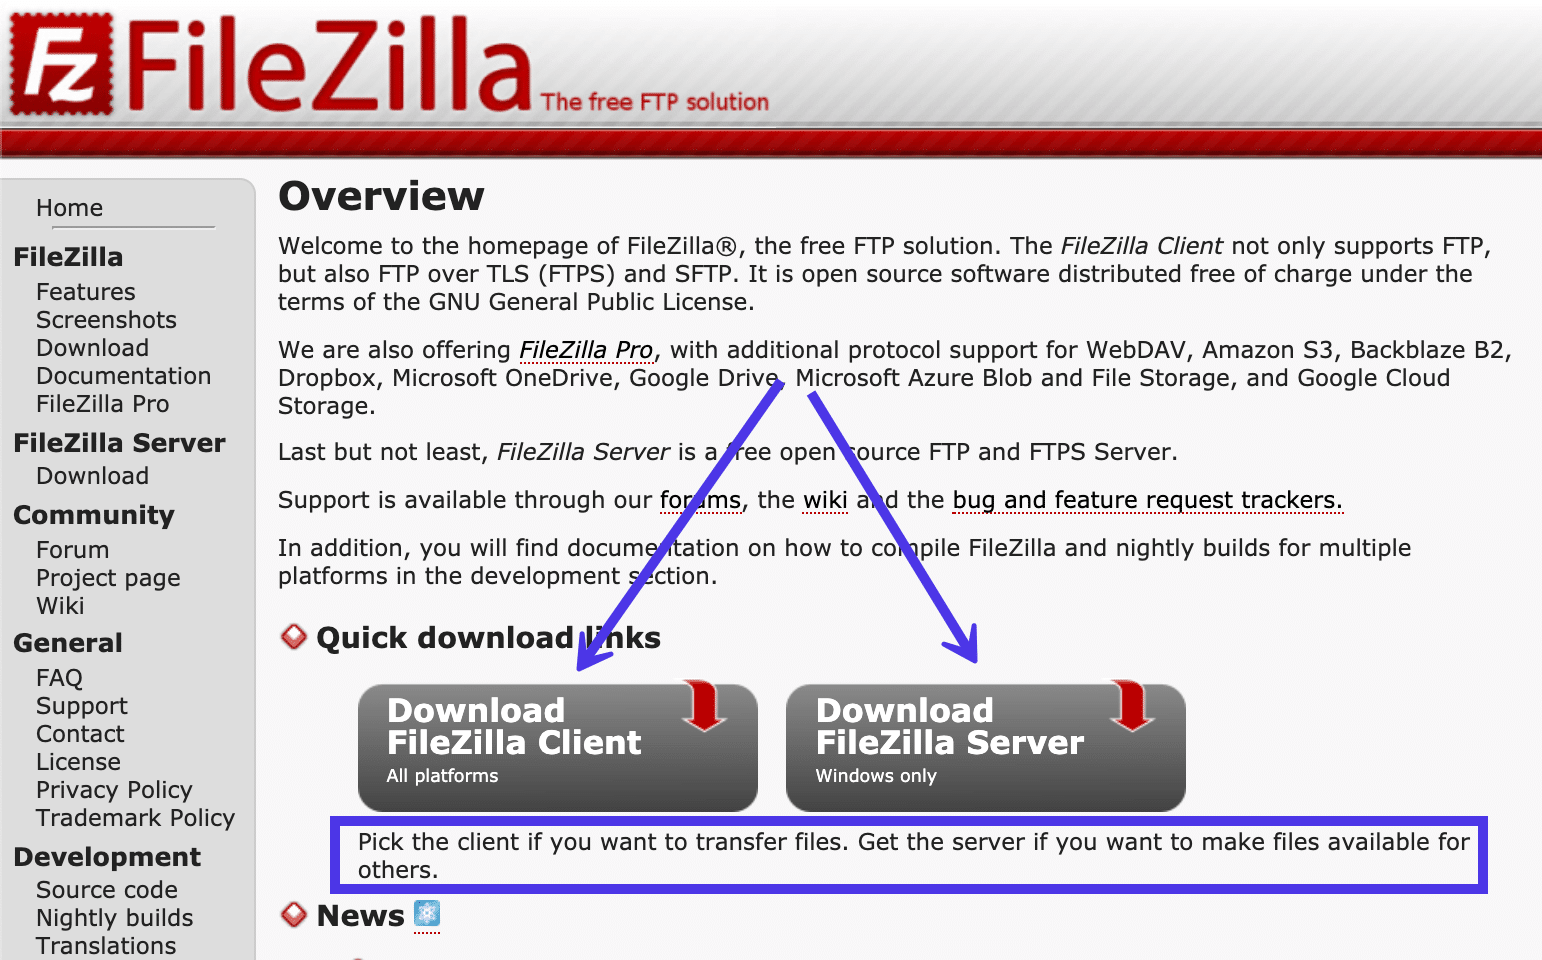 De FileZilla website had twee downloadopties voor de FileZilla Client en de FileZilla Server.